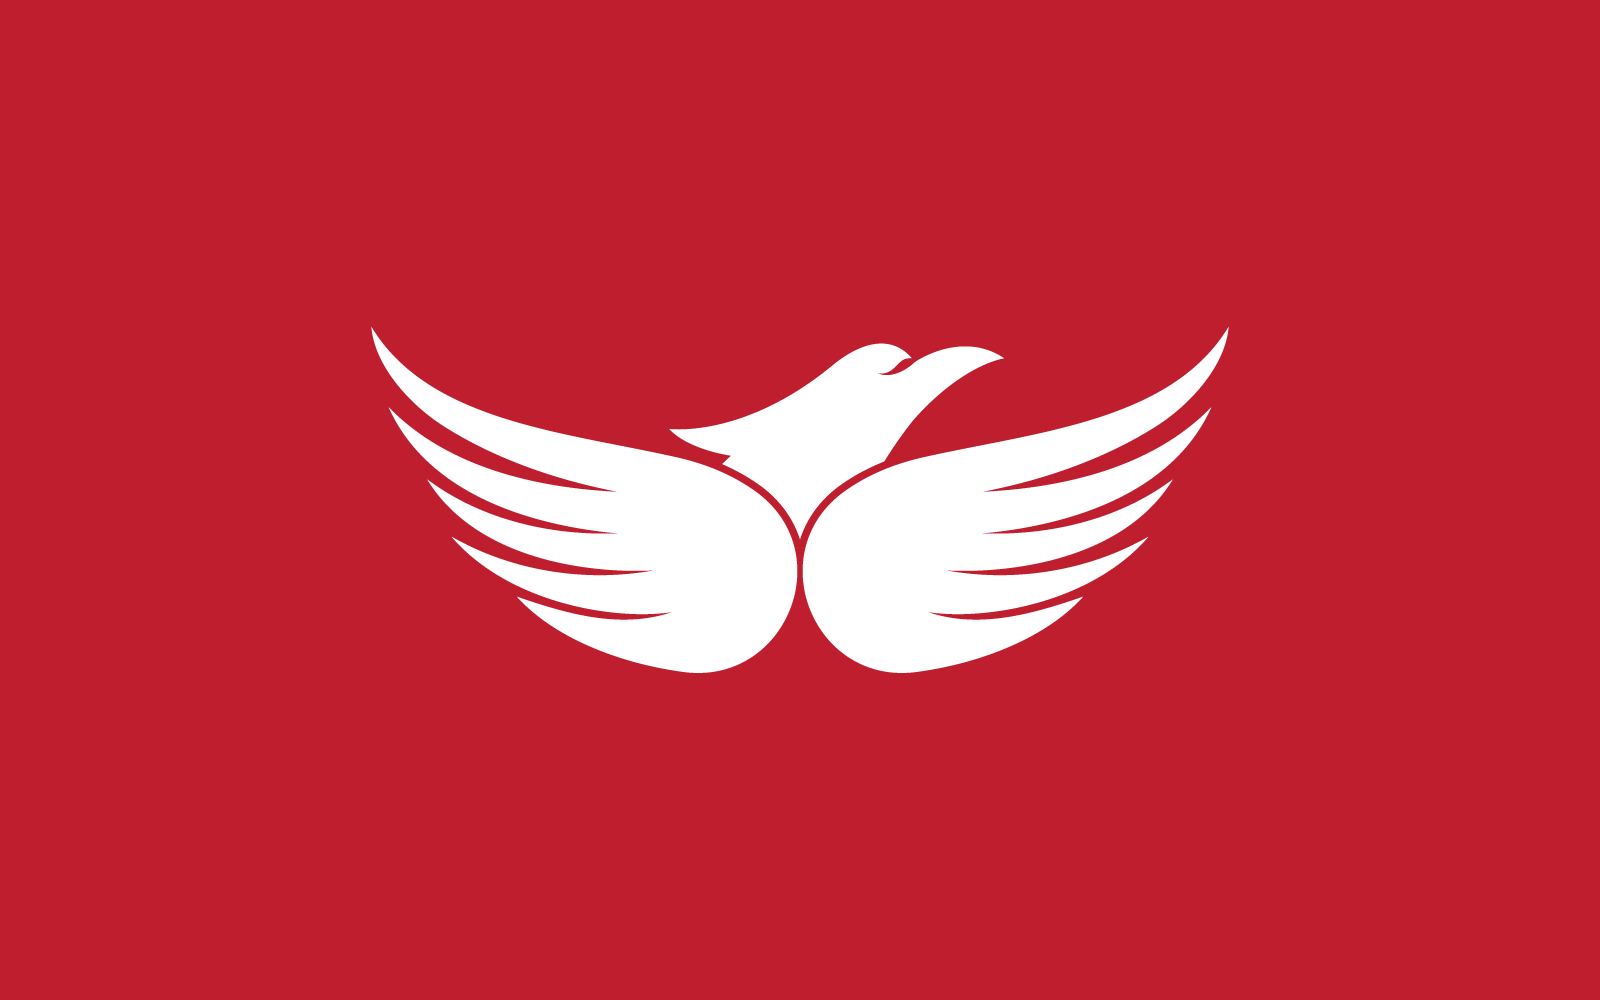 Falcon eagle bird illustration logo design vector template